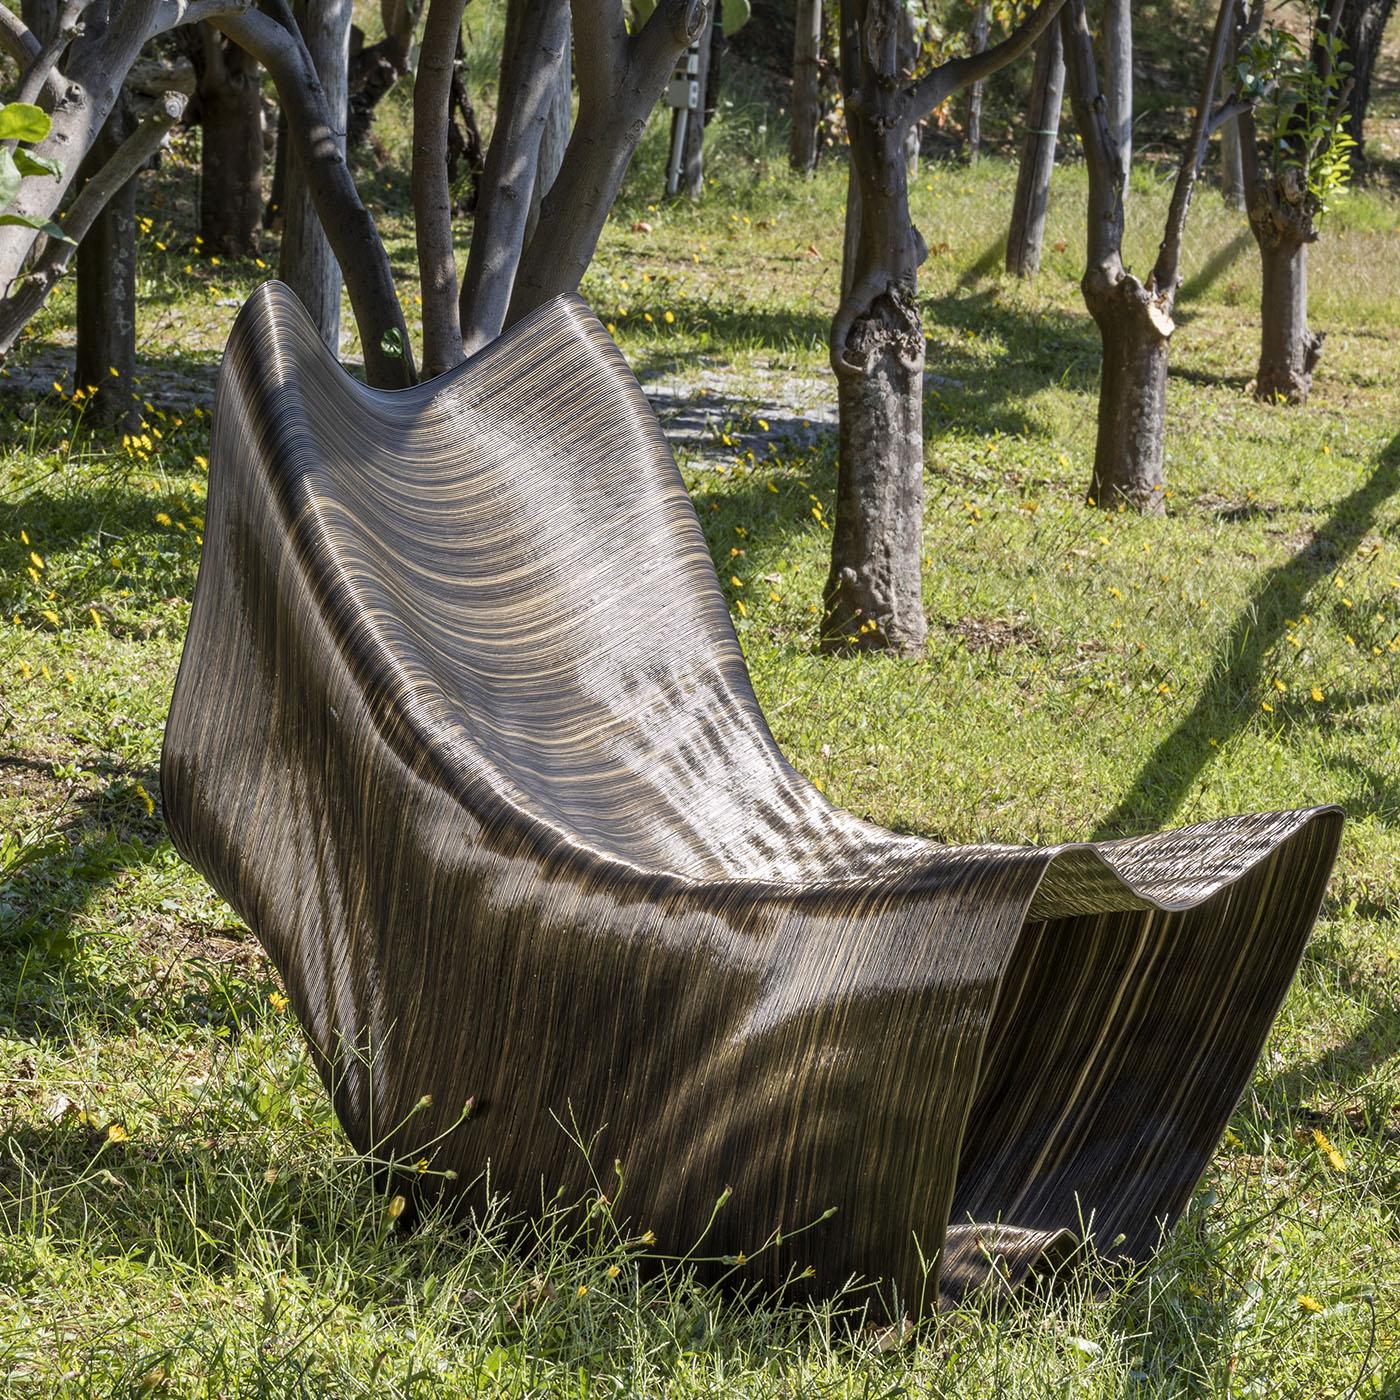 Vulcano, ein Entwurf von Medaarch aus dem Jahr 2020, stellt sich vor. Diese Chaiselongue für Außenbereiche wie Gärten oder Swimmingpools verleiht ihrer Umgebung eine starke und doch sanfte Präsenz. Seine gewellte Oberfläche ahmt das vom Wind